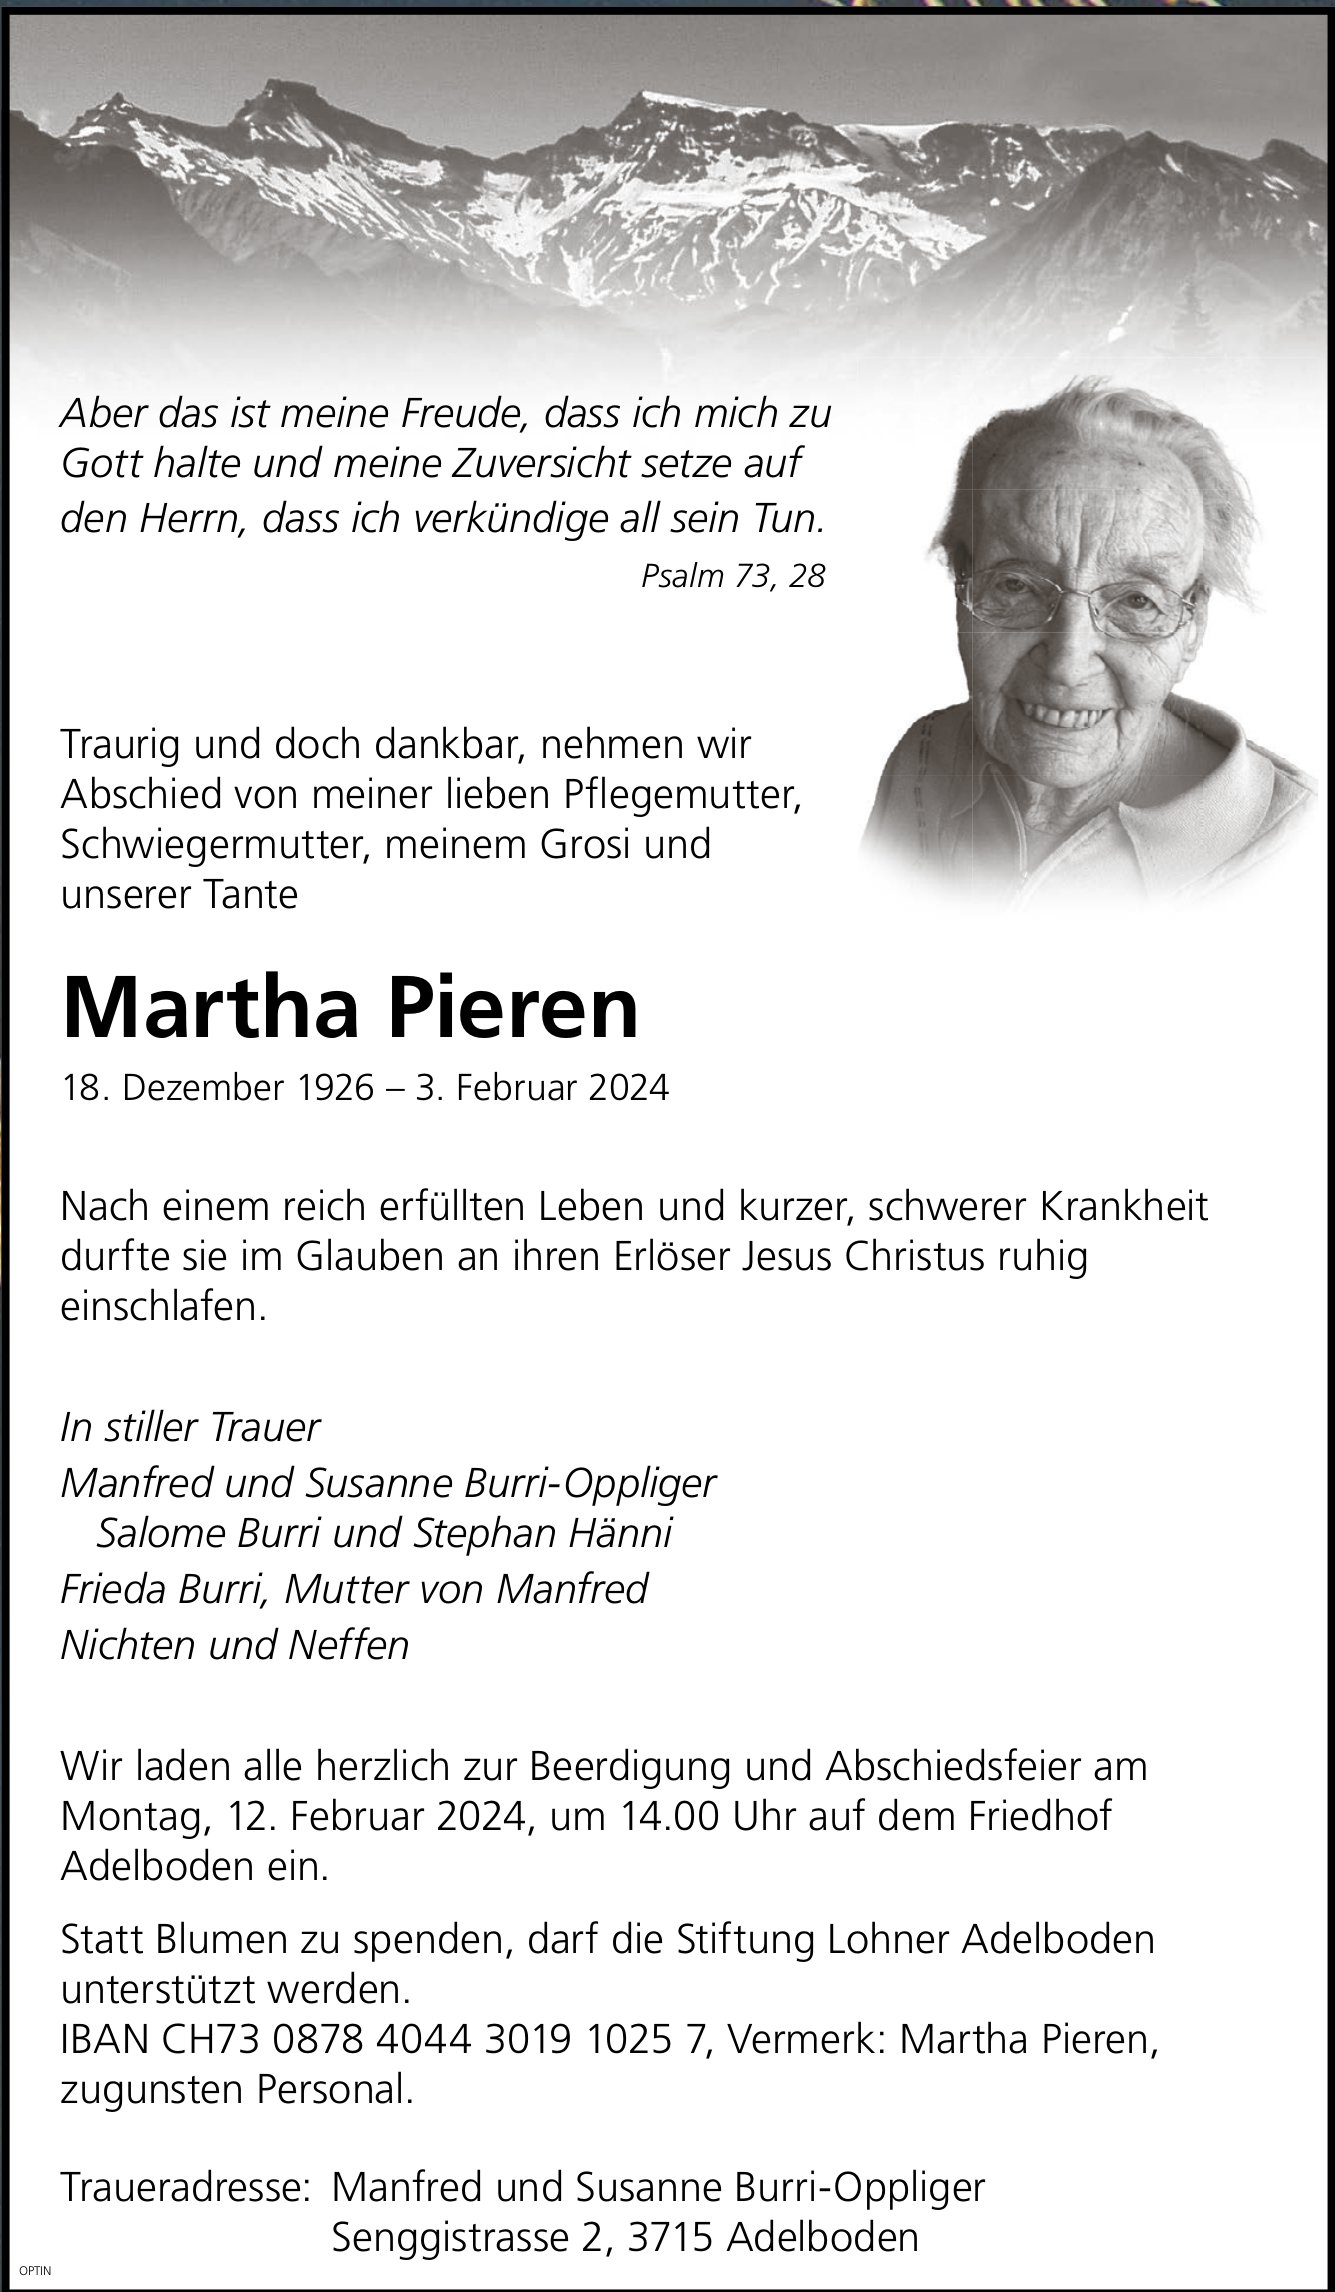 Martha Pieren, Februar 2024 / TA